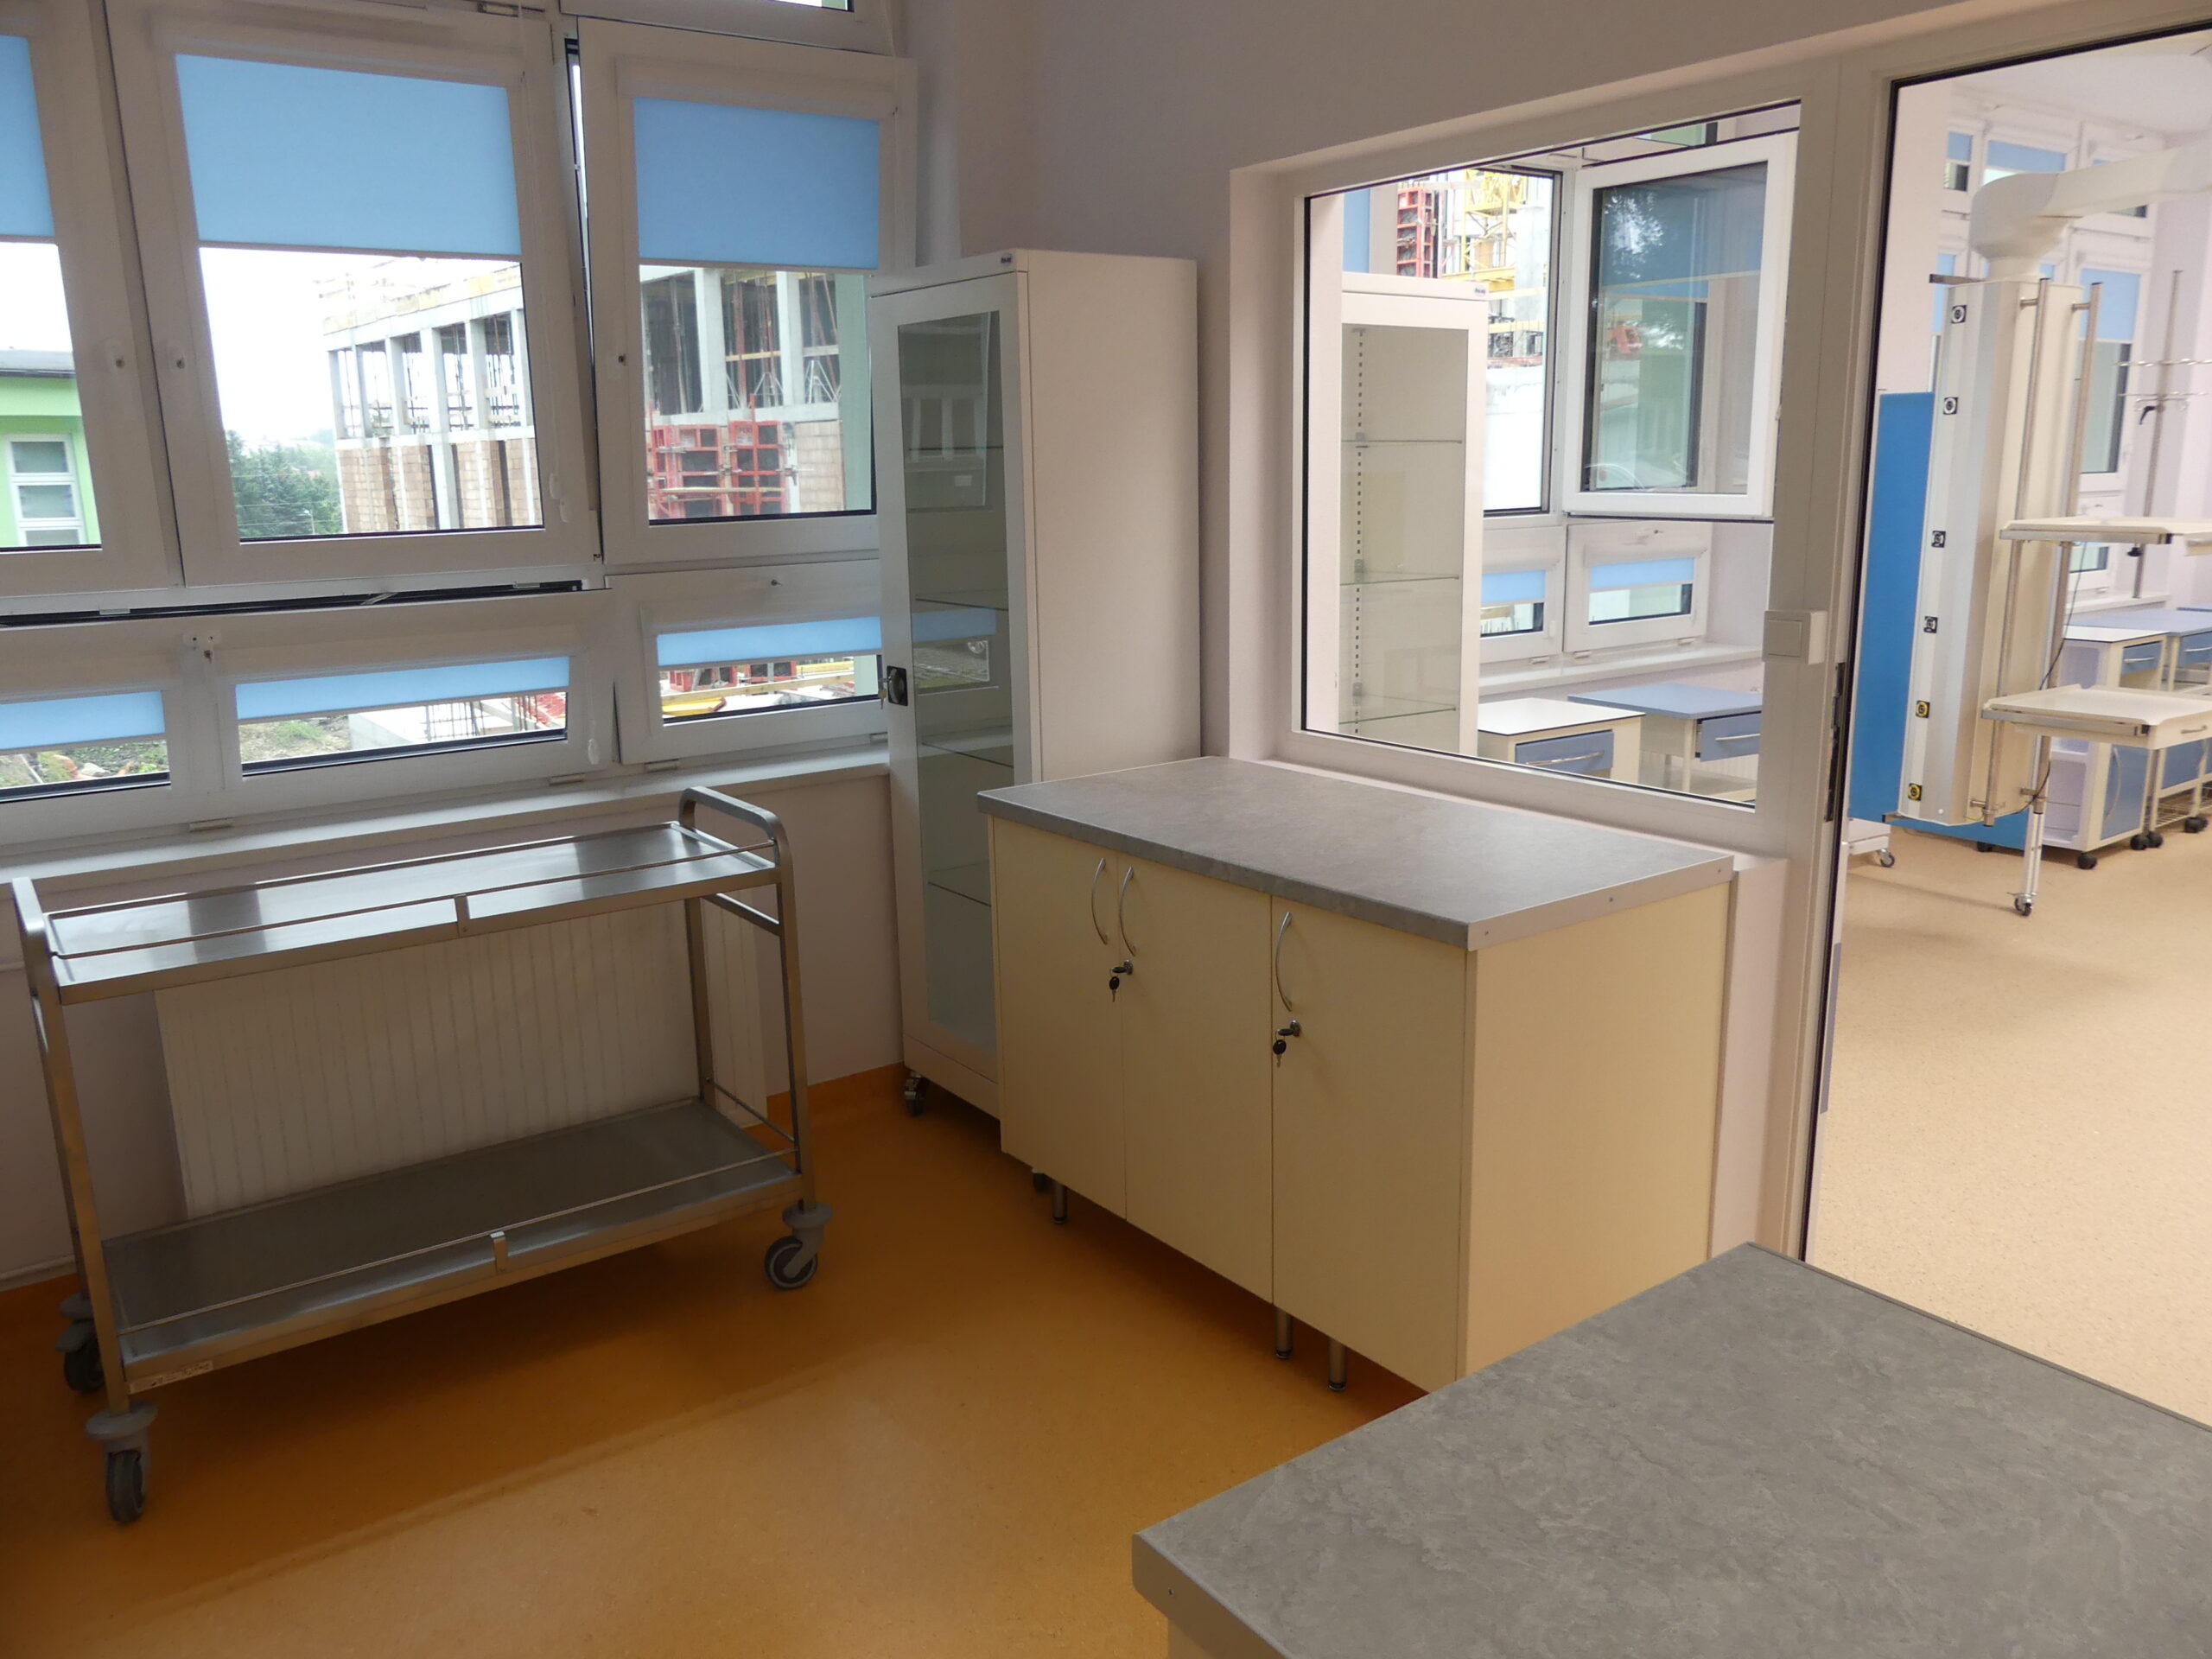 Zakończono modernizację Oddziału Pediatrii i Alergologii Szpitala Specjalistycznego w Jaśle